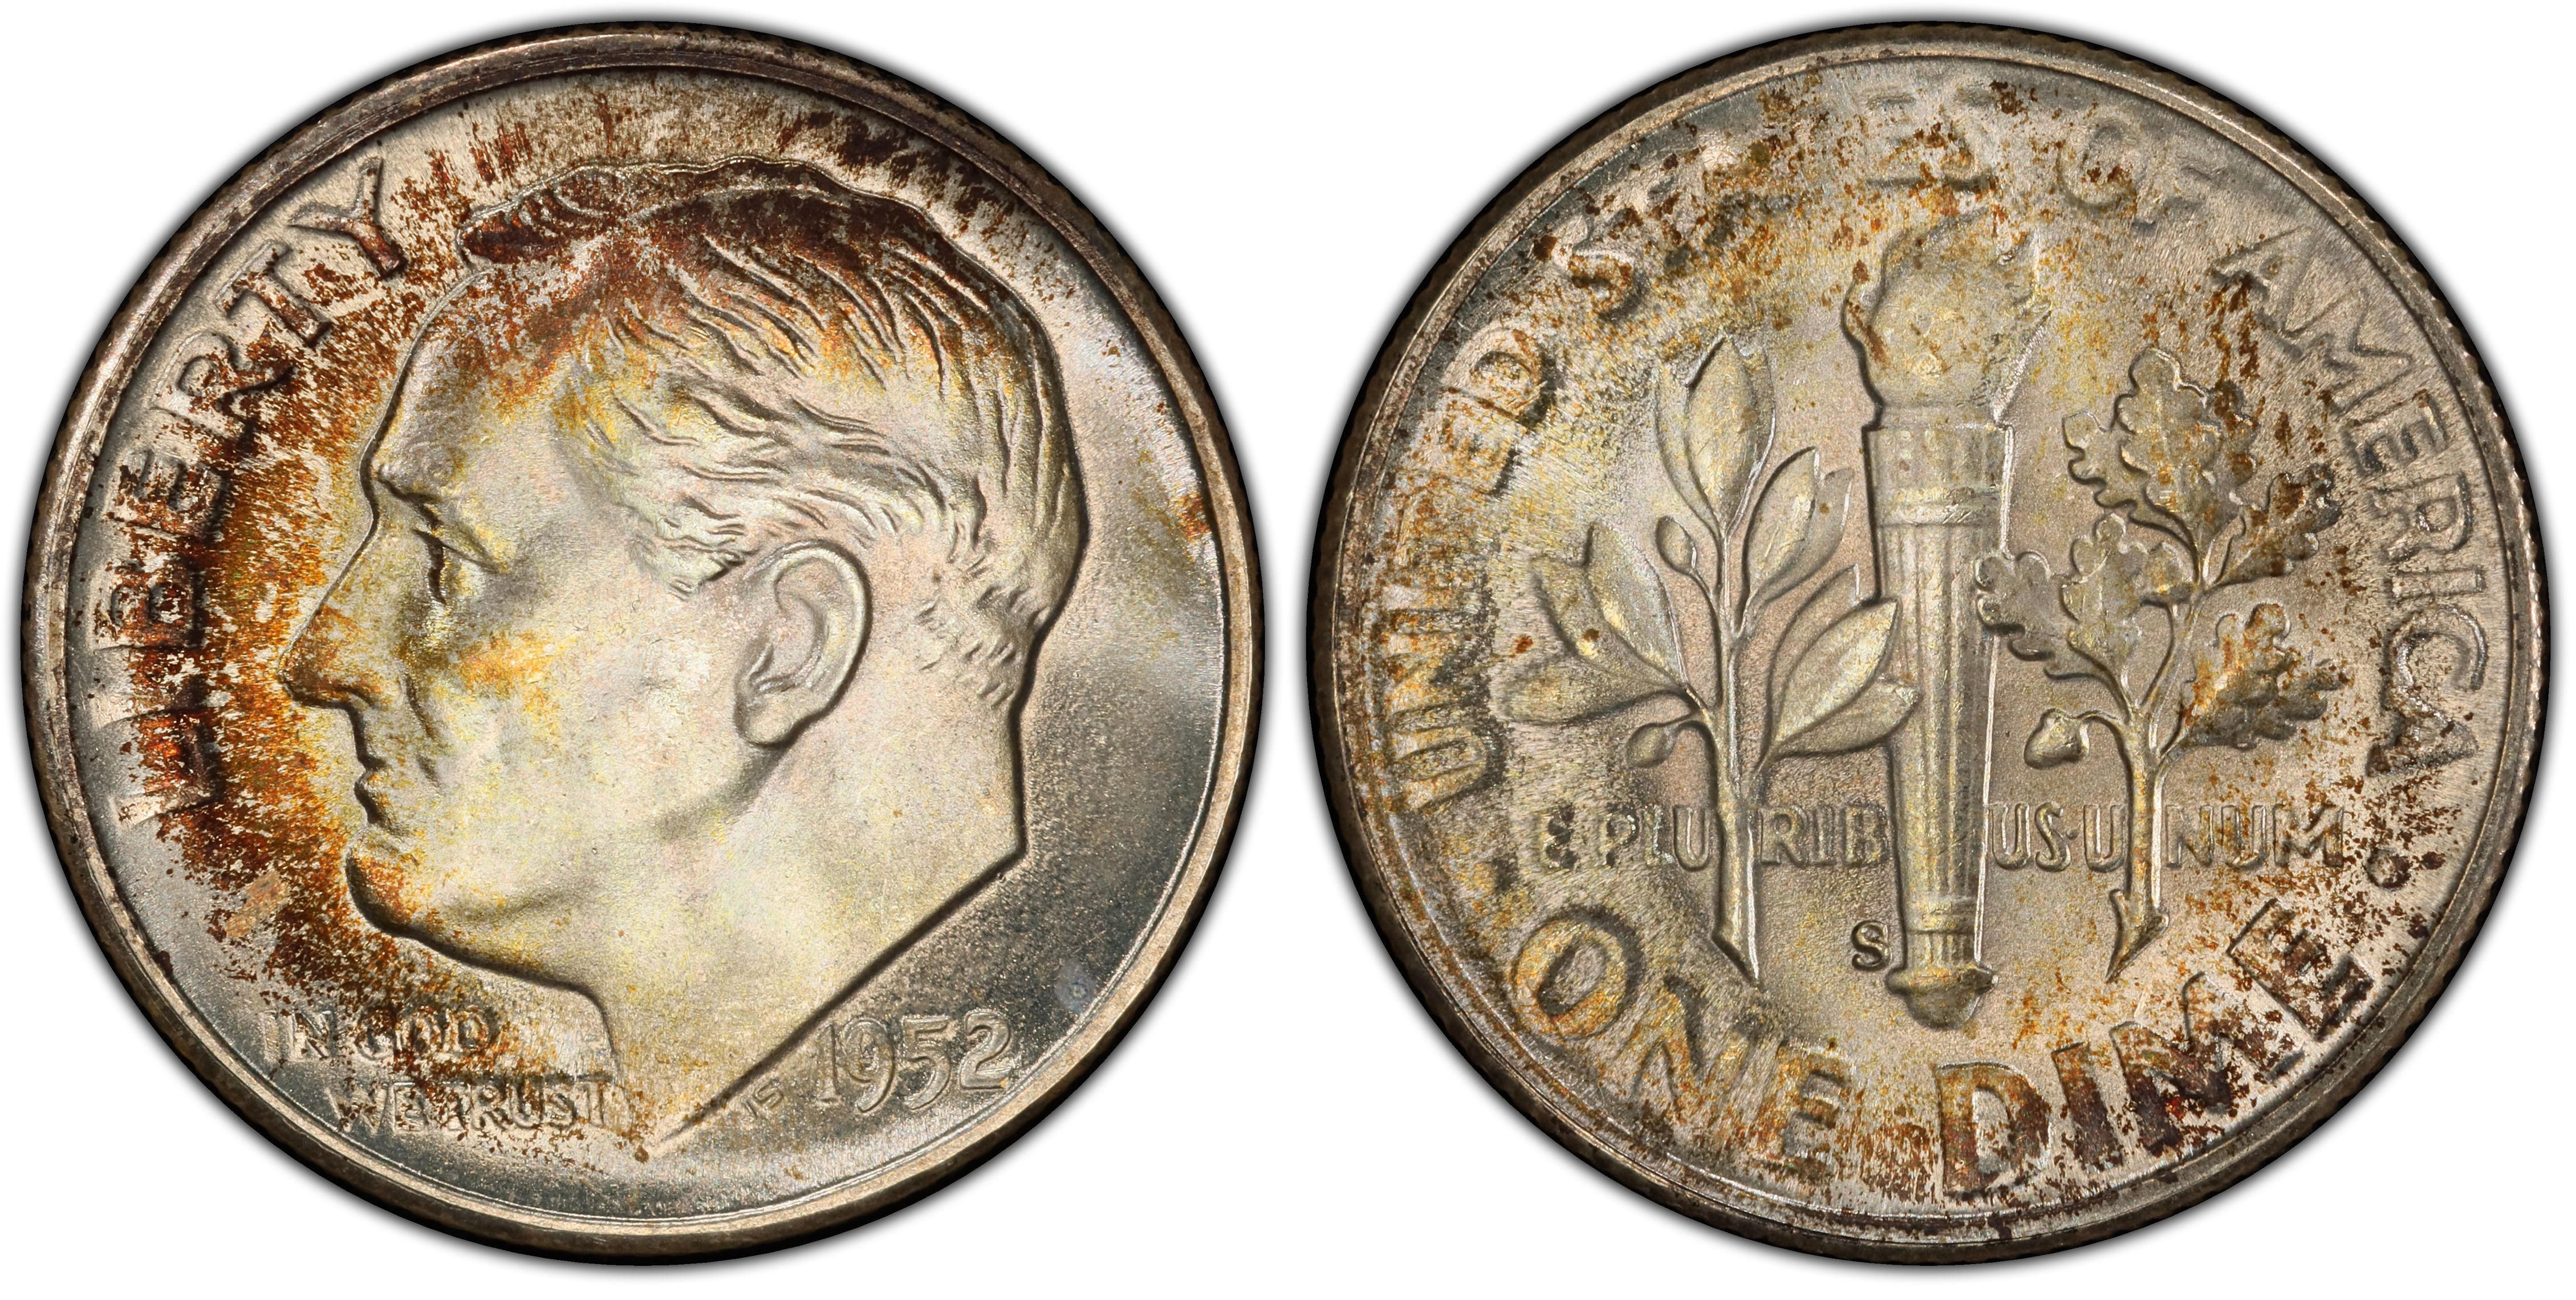 1952 silver dime value